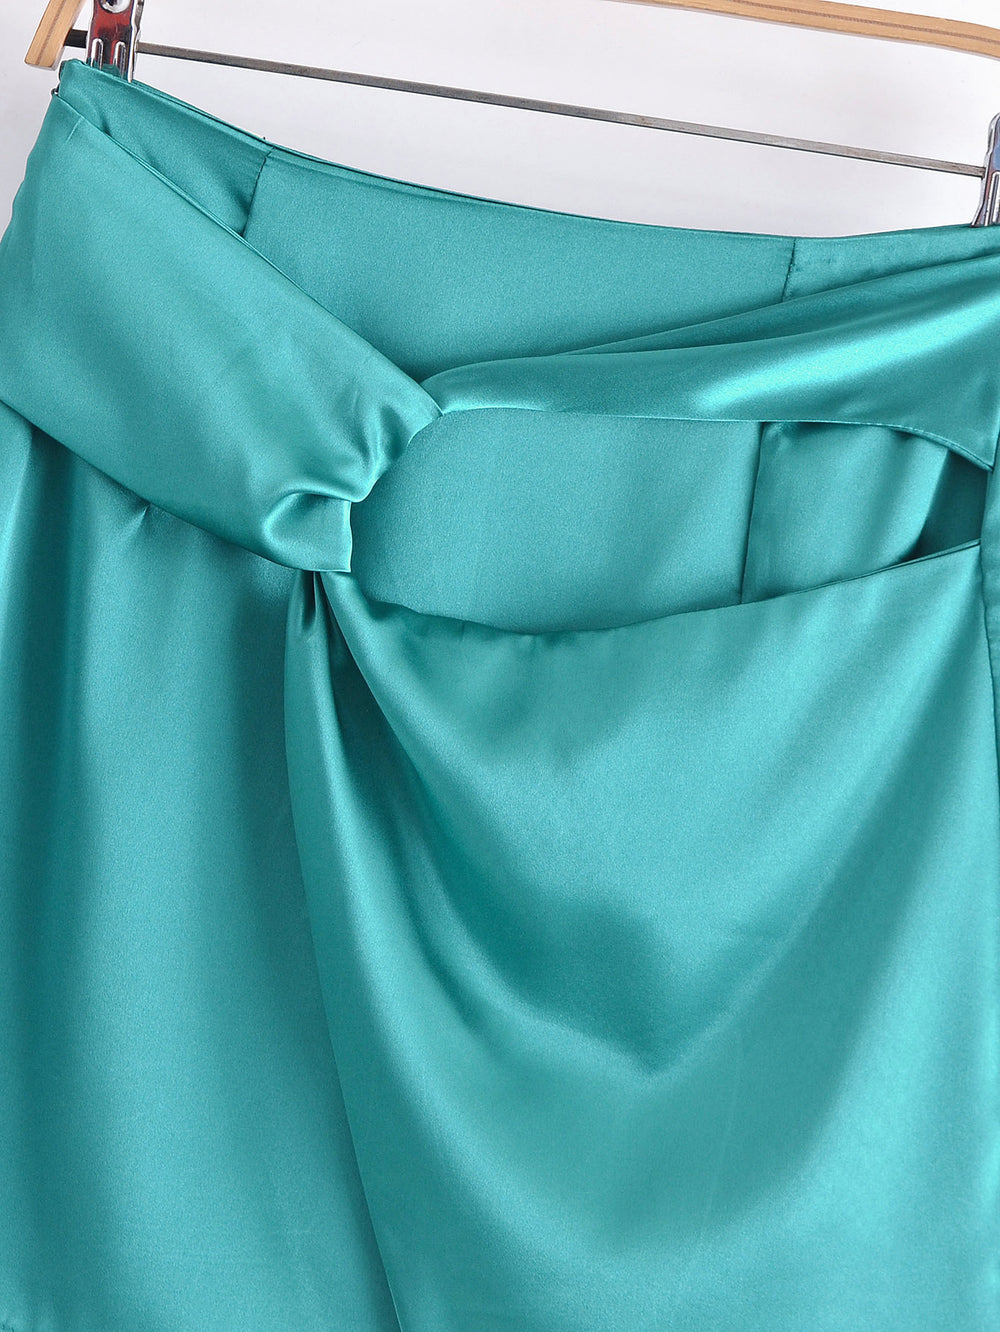 Spring Women Clothing French Retro High Waist Irregular Asymmetric Skirt Mini Skirt Slimming